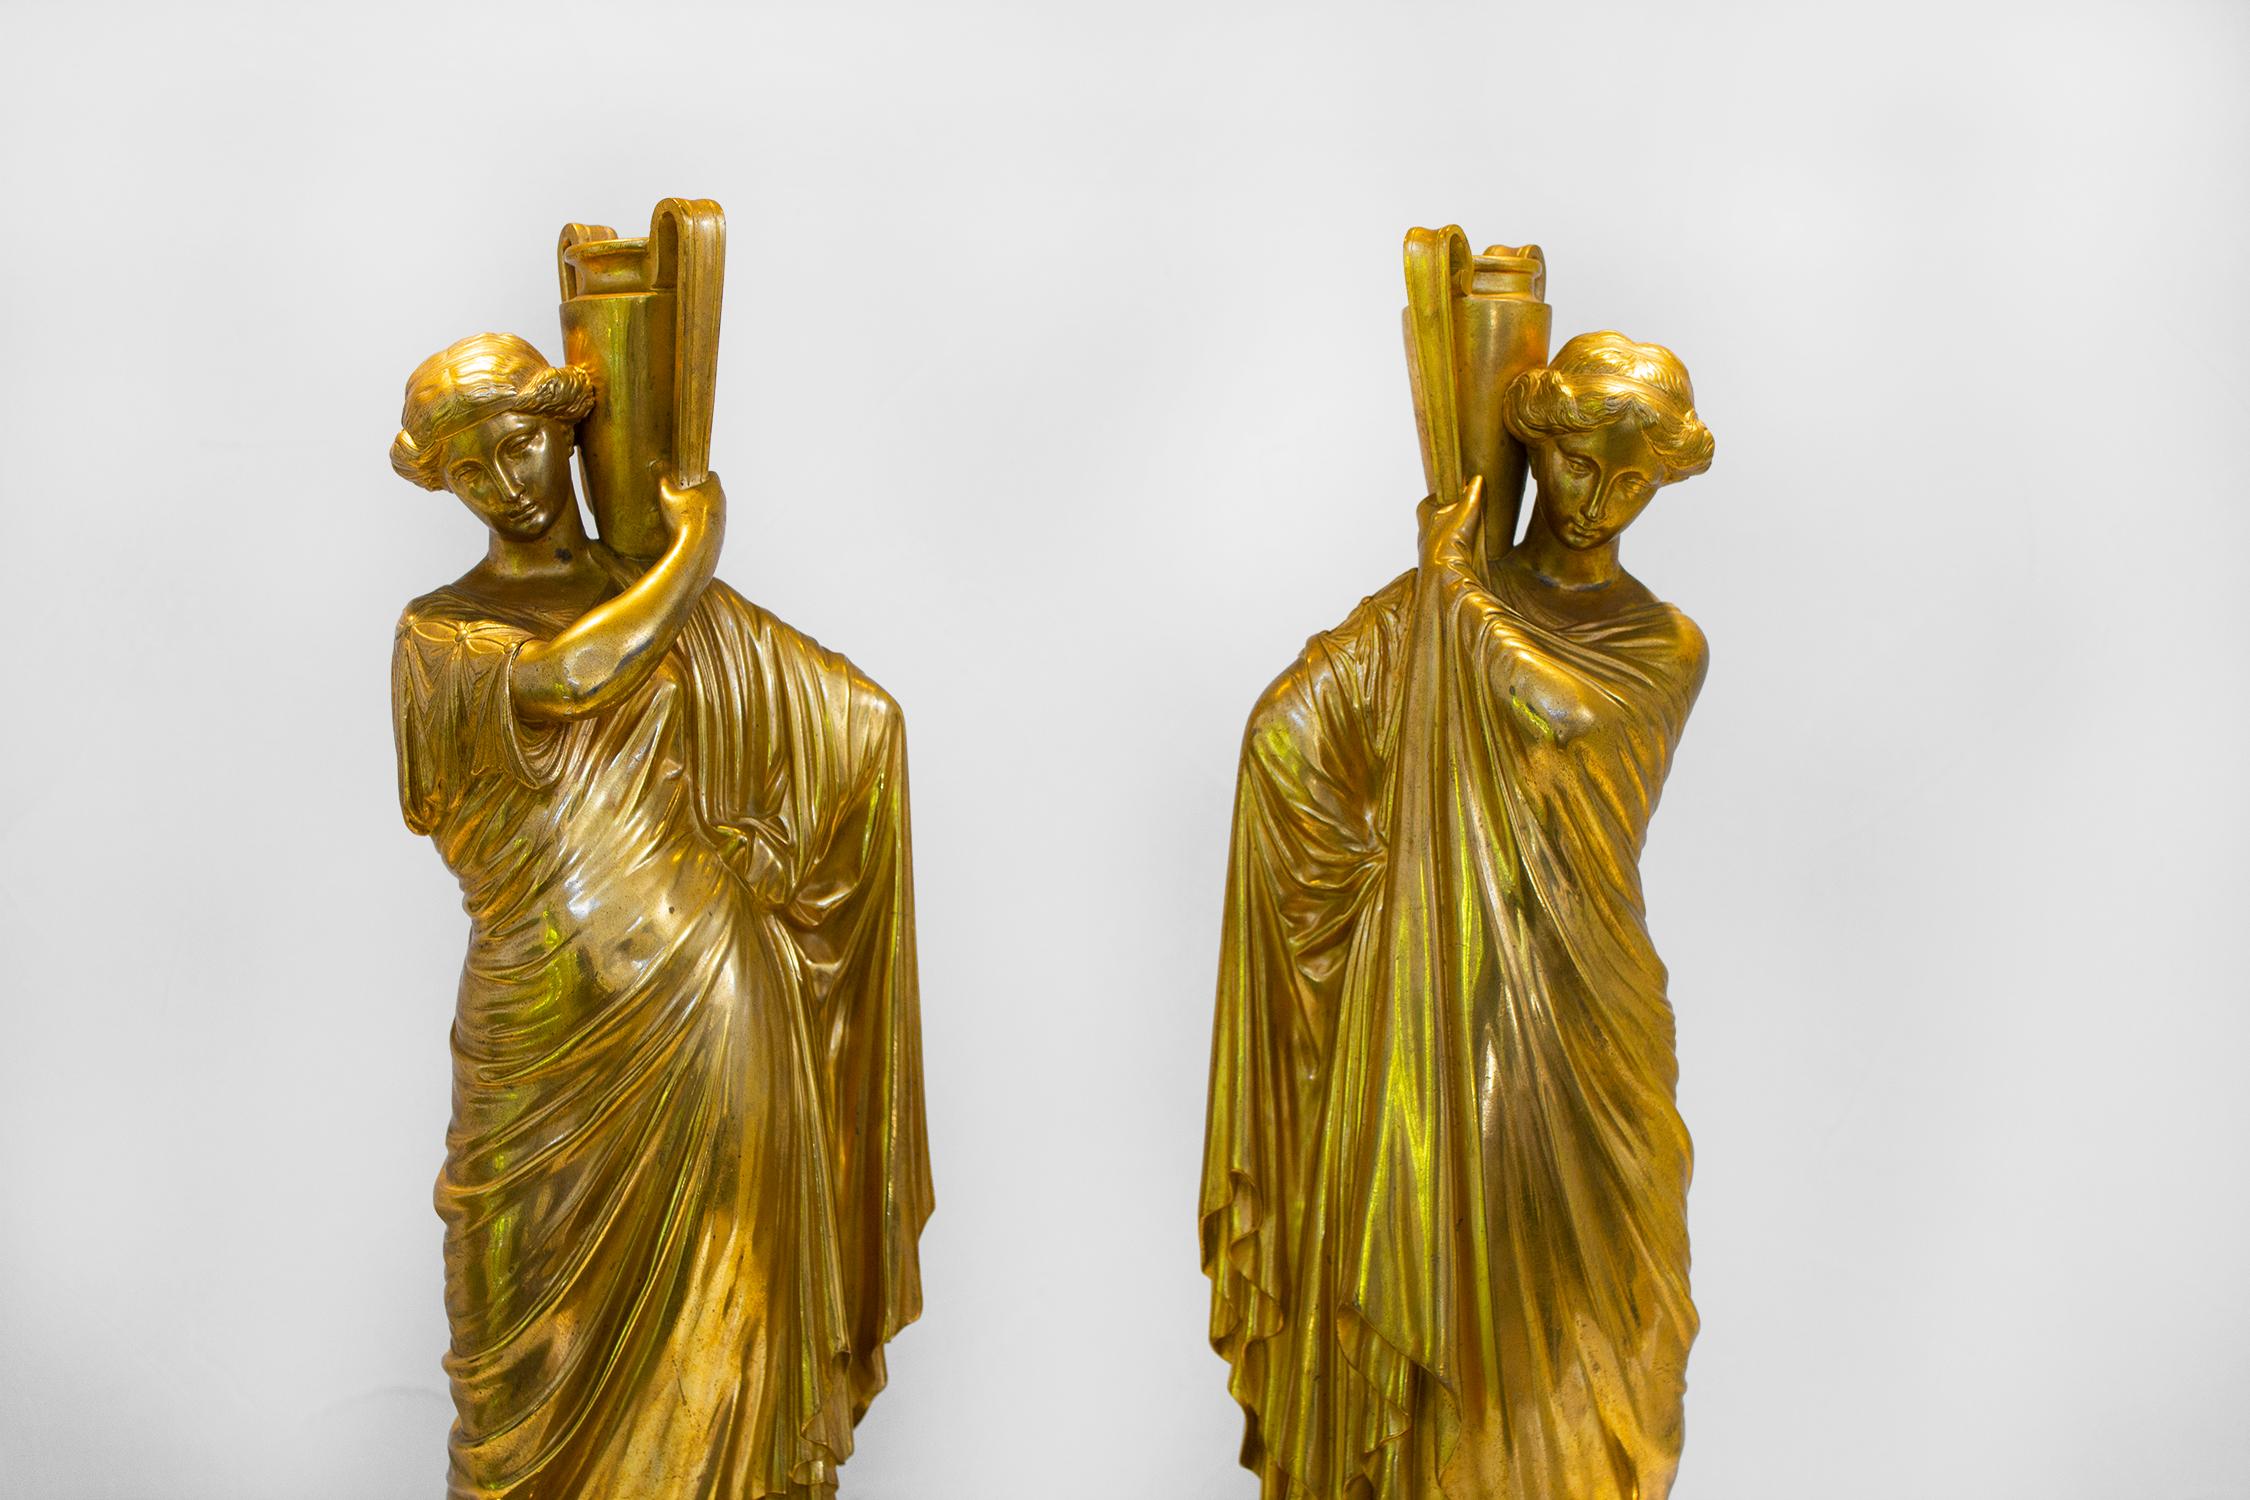 Wunderschönes Paar antiker goldener Bronzeguss-Römerinnen auf neu gefertigten Marmorsockeln. Sie sind hohl und die Wasserkrüge sind offen, so dass sie auch für ein Arrangement ohne Wasser verwendet werden können.